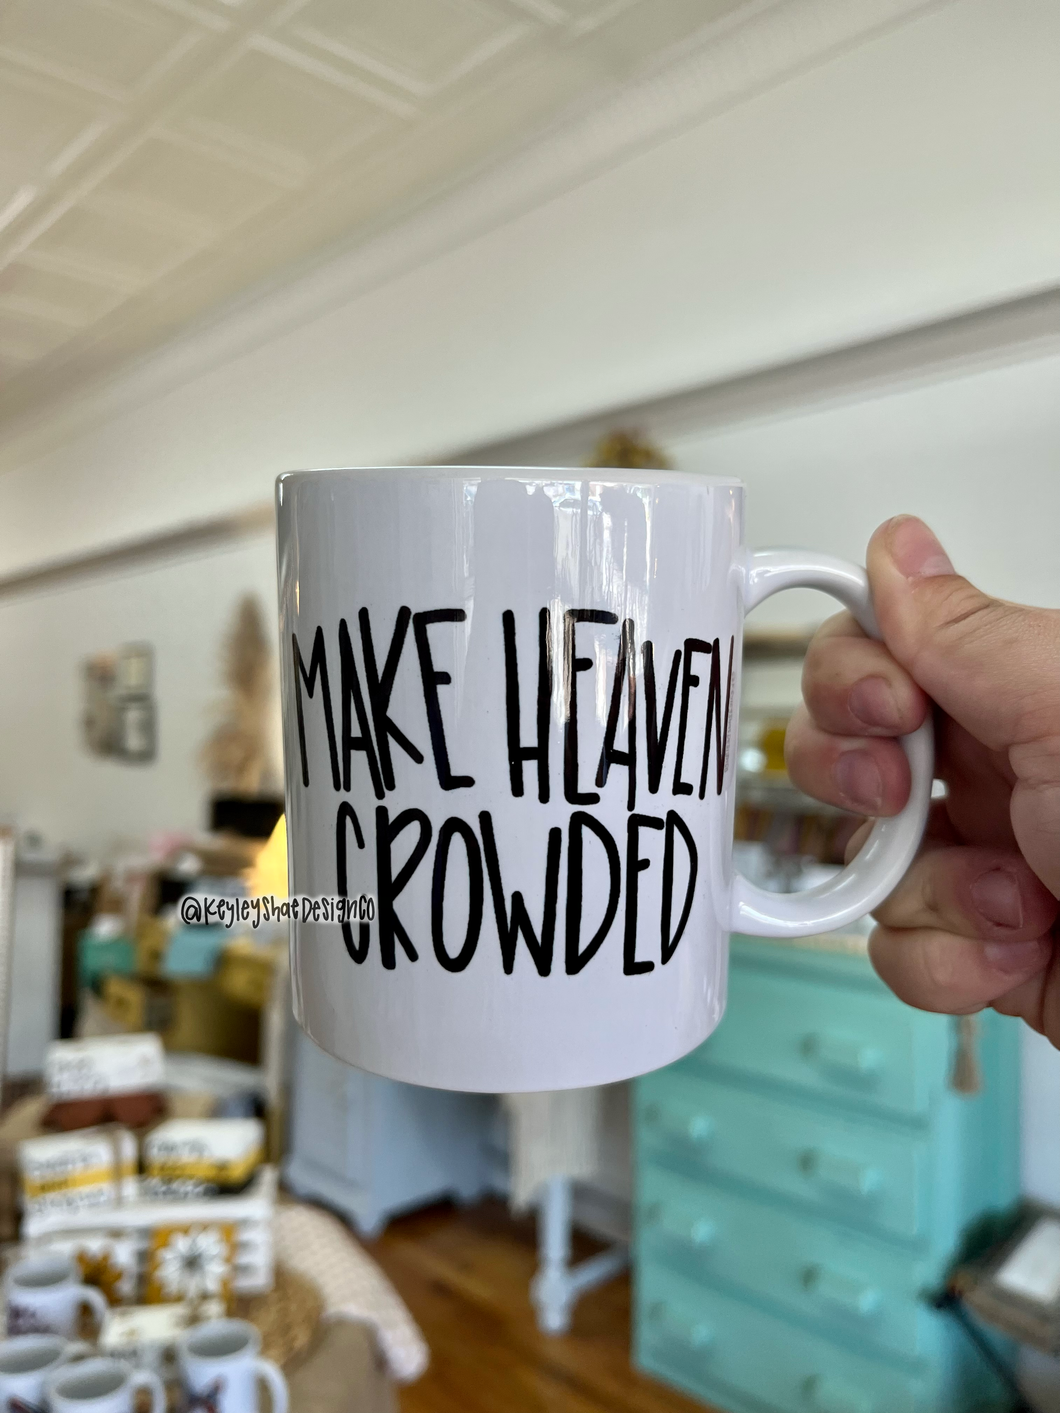 Make Heaven Crowded Mug